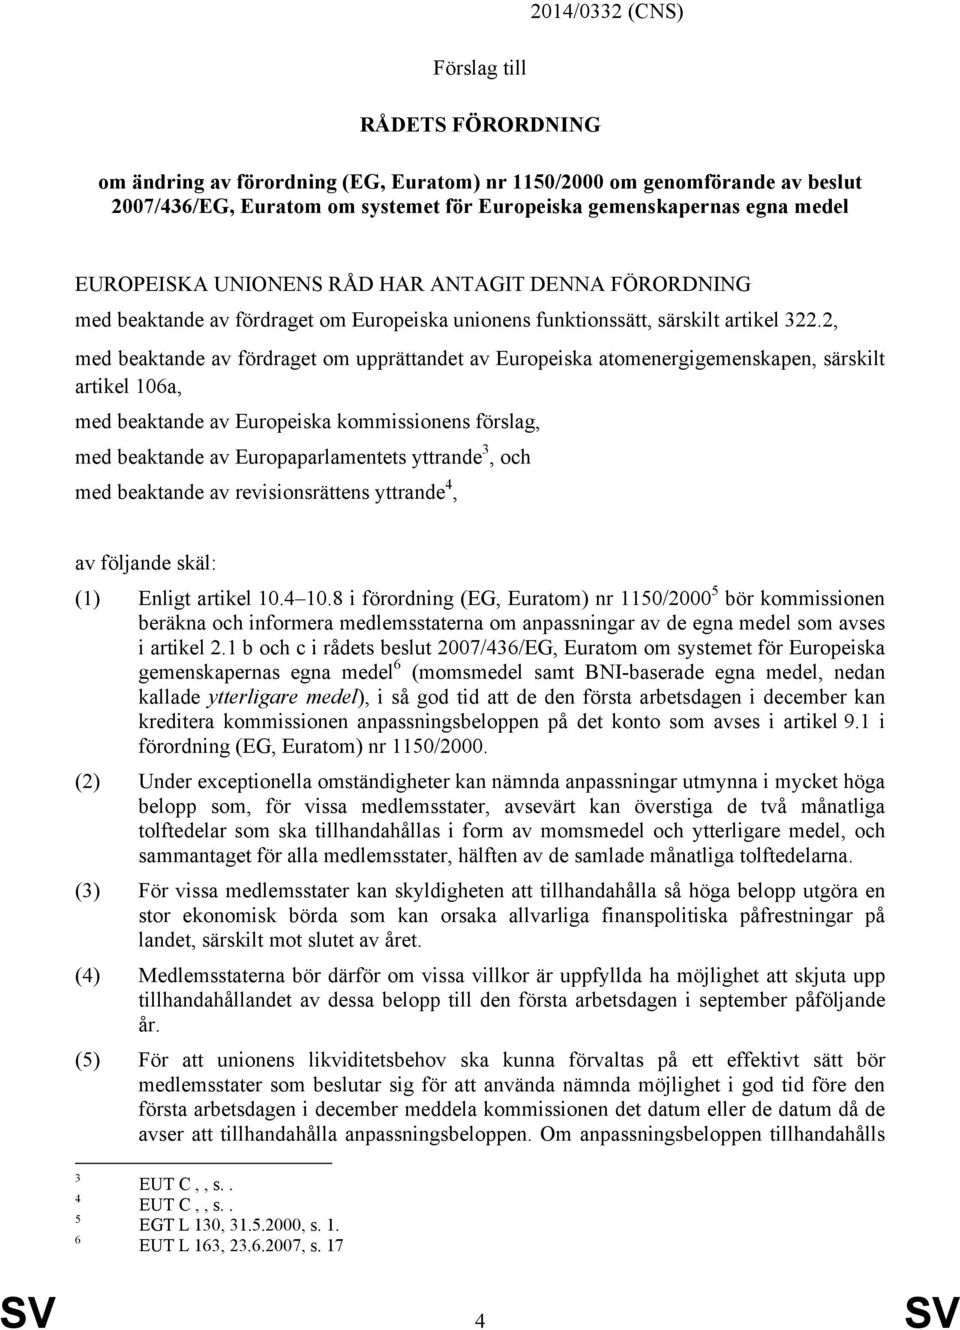 2, med beaktande av fördraget om upprättandet av Europeiska atomenergigemenskapen, särskilt artikel 106a, med beaktande av Europeiska kommissionens förslag, med beaktande av Europaparlamentets